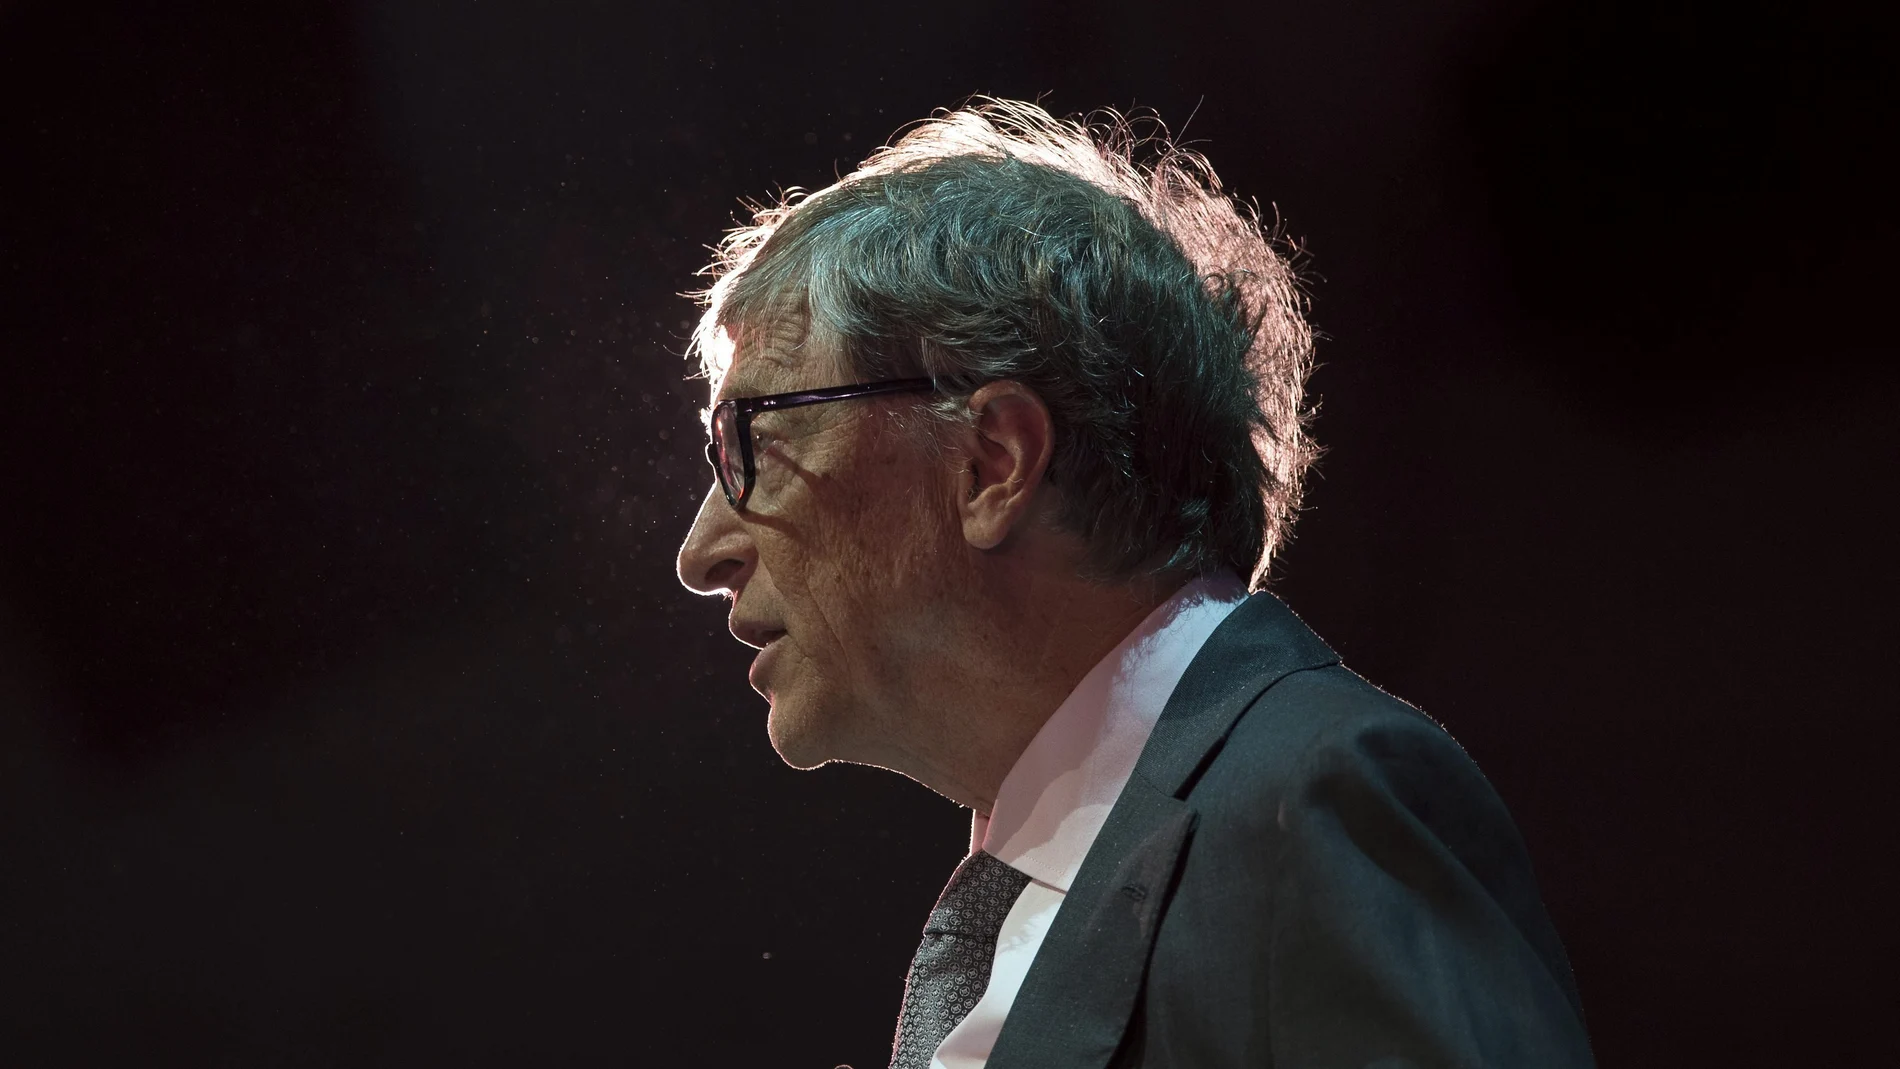 El fundador y presidente de Microsoft, Bill Gates, habla durante un evento en Londres